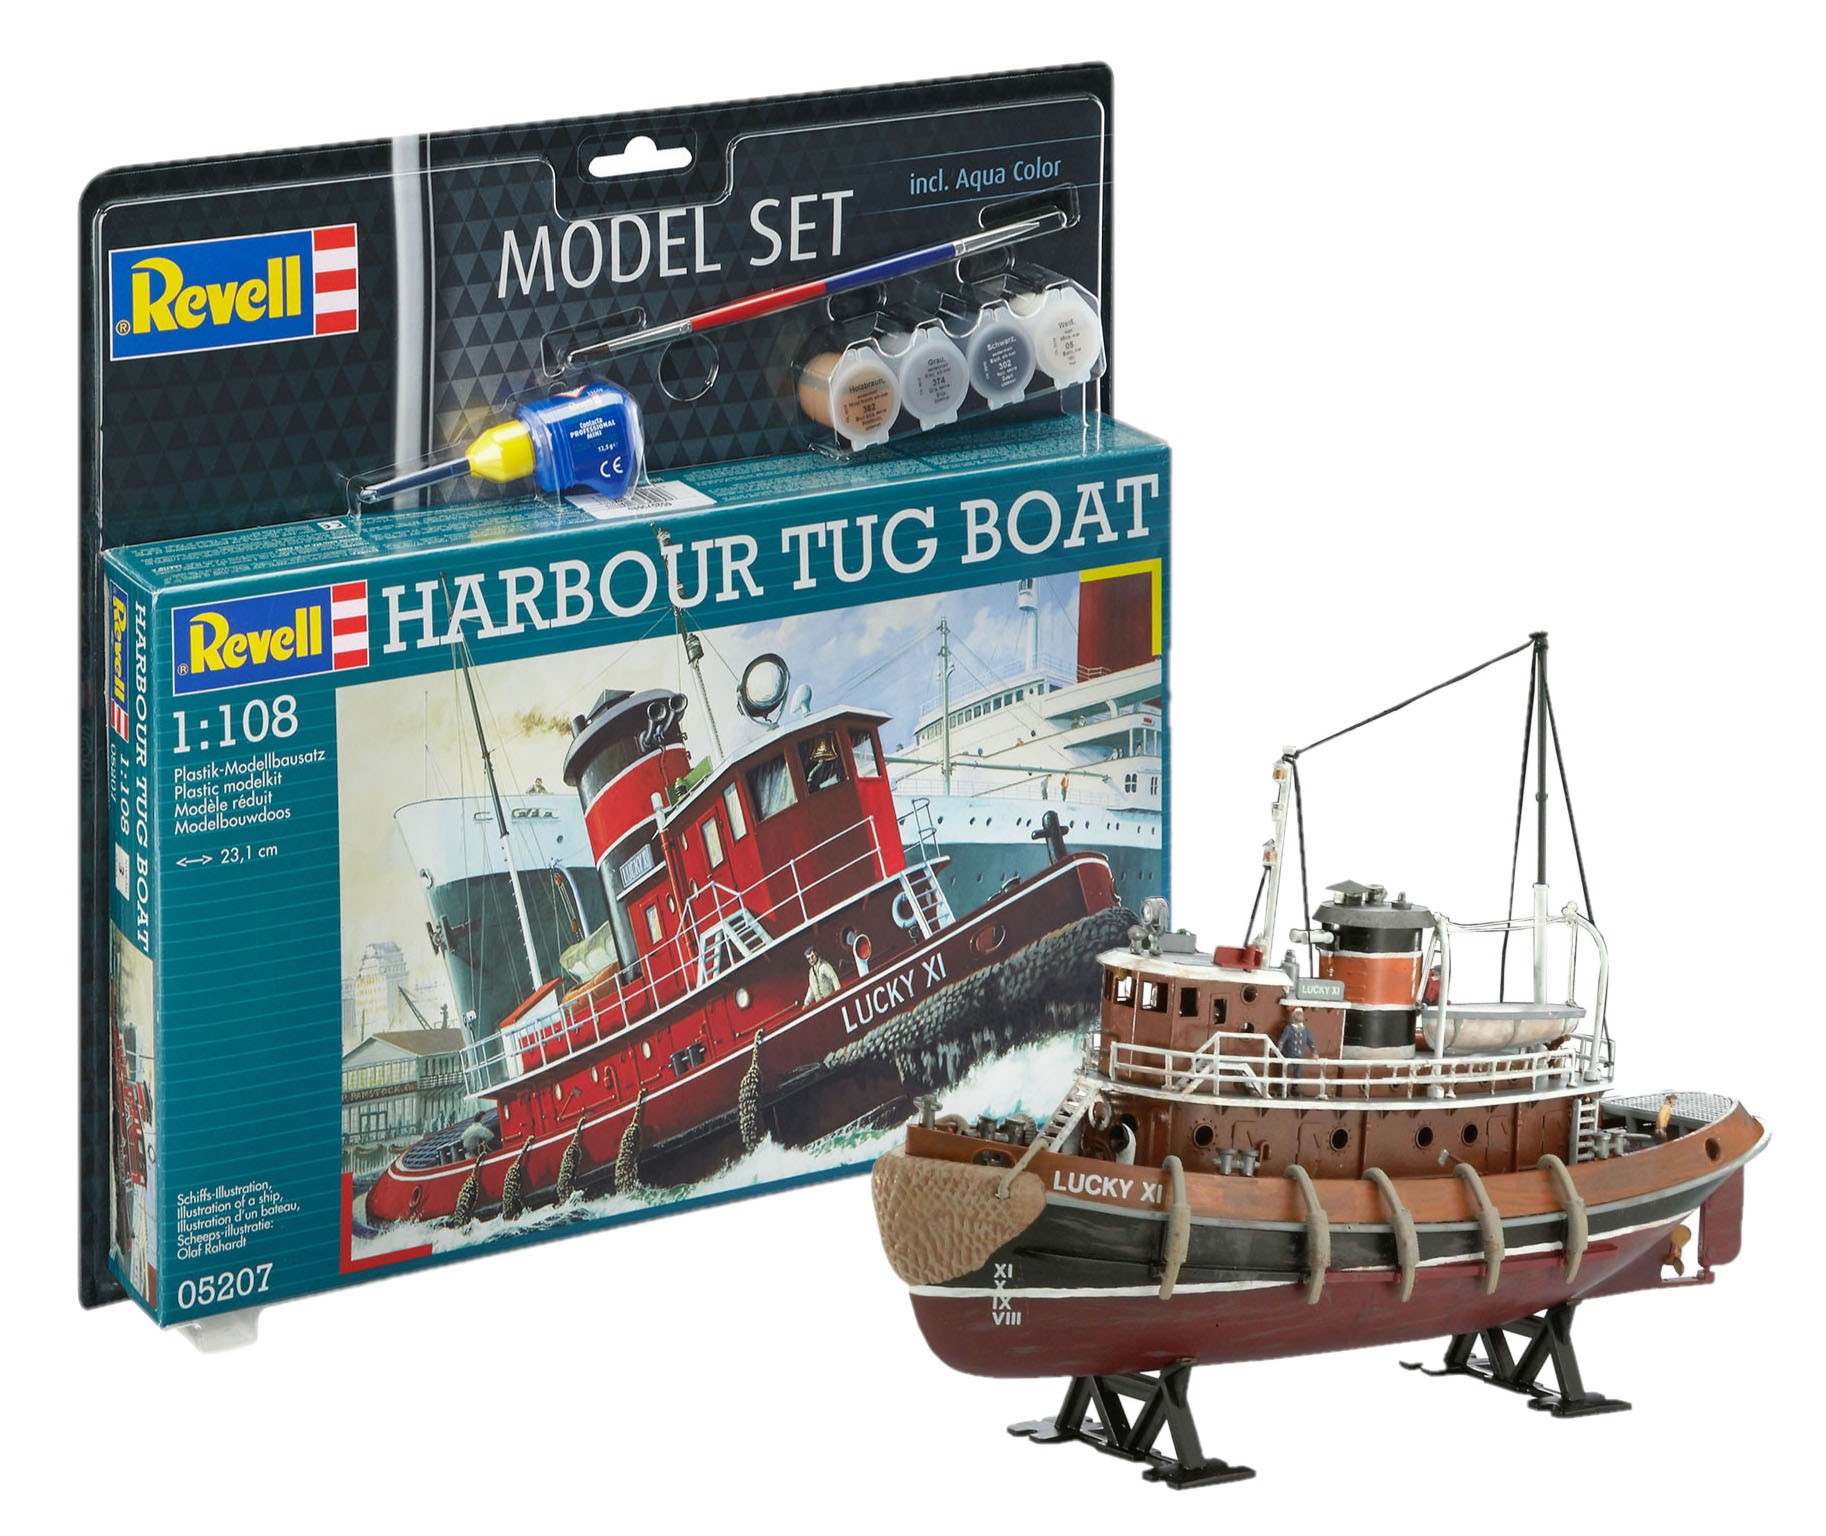 Revell 65207 Harbour Tug 1:108  " Model-Set "